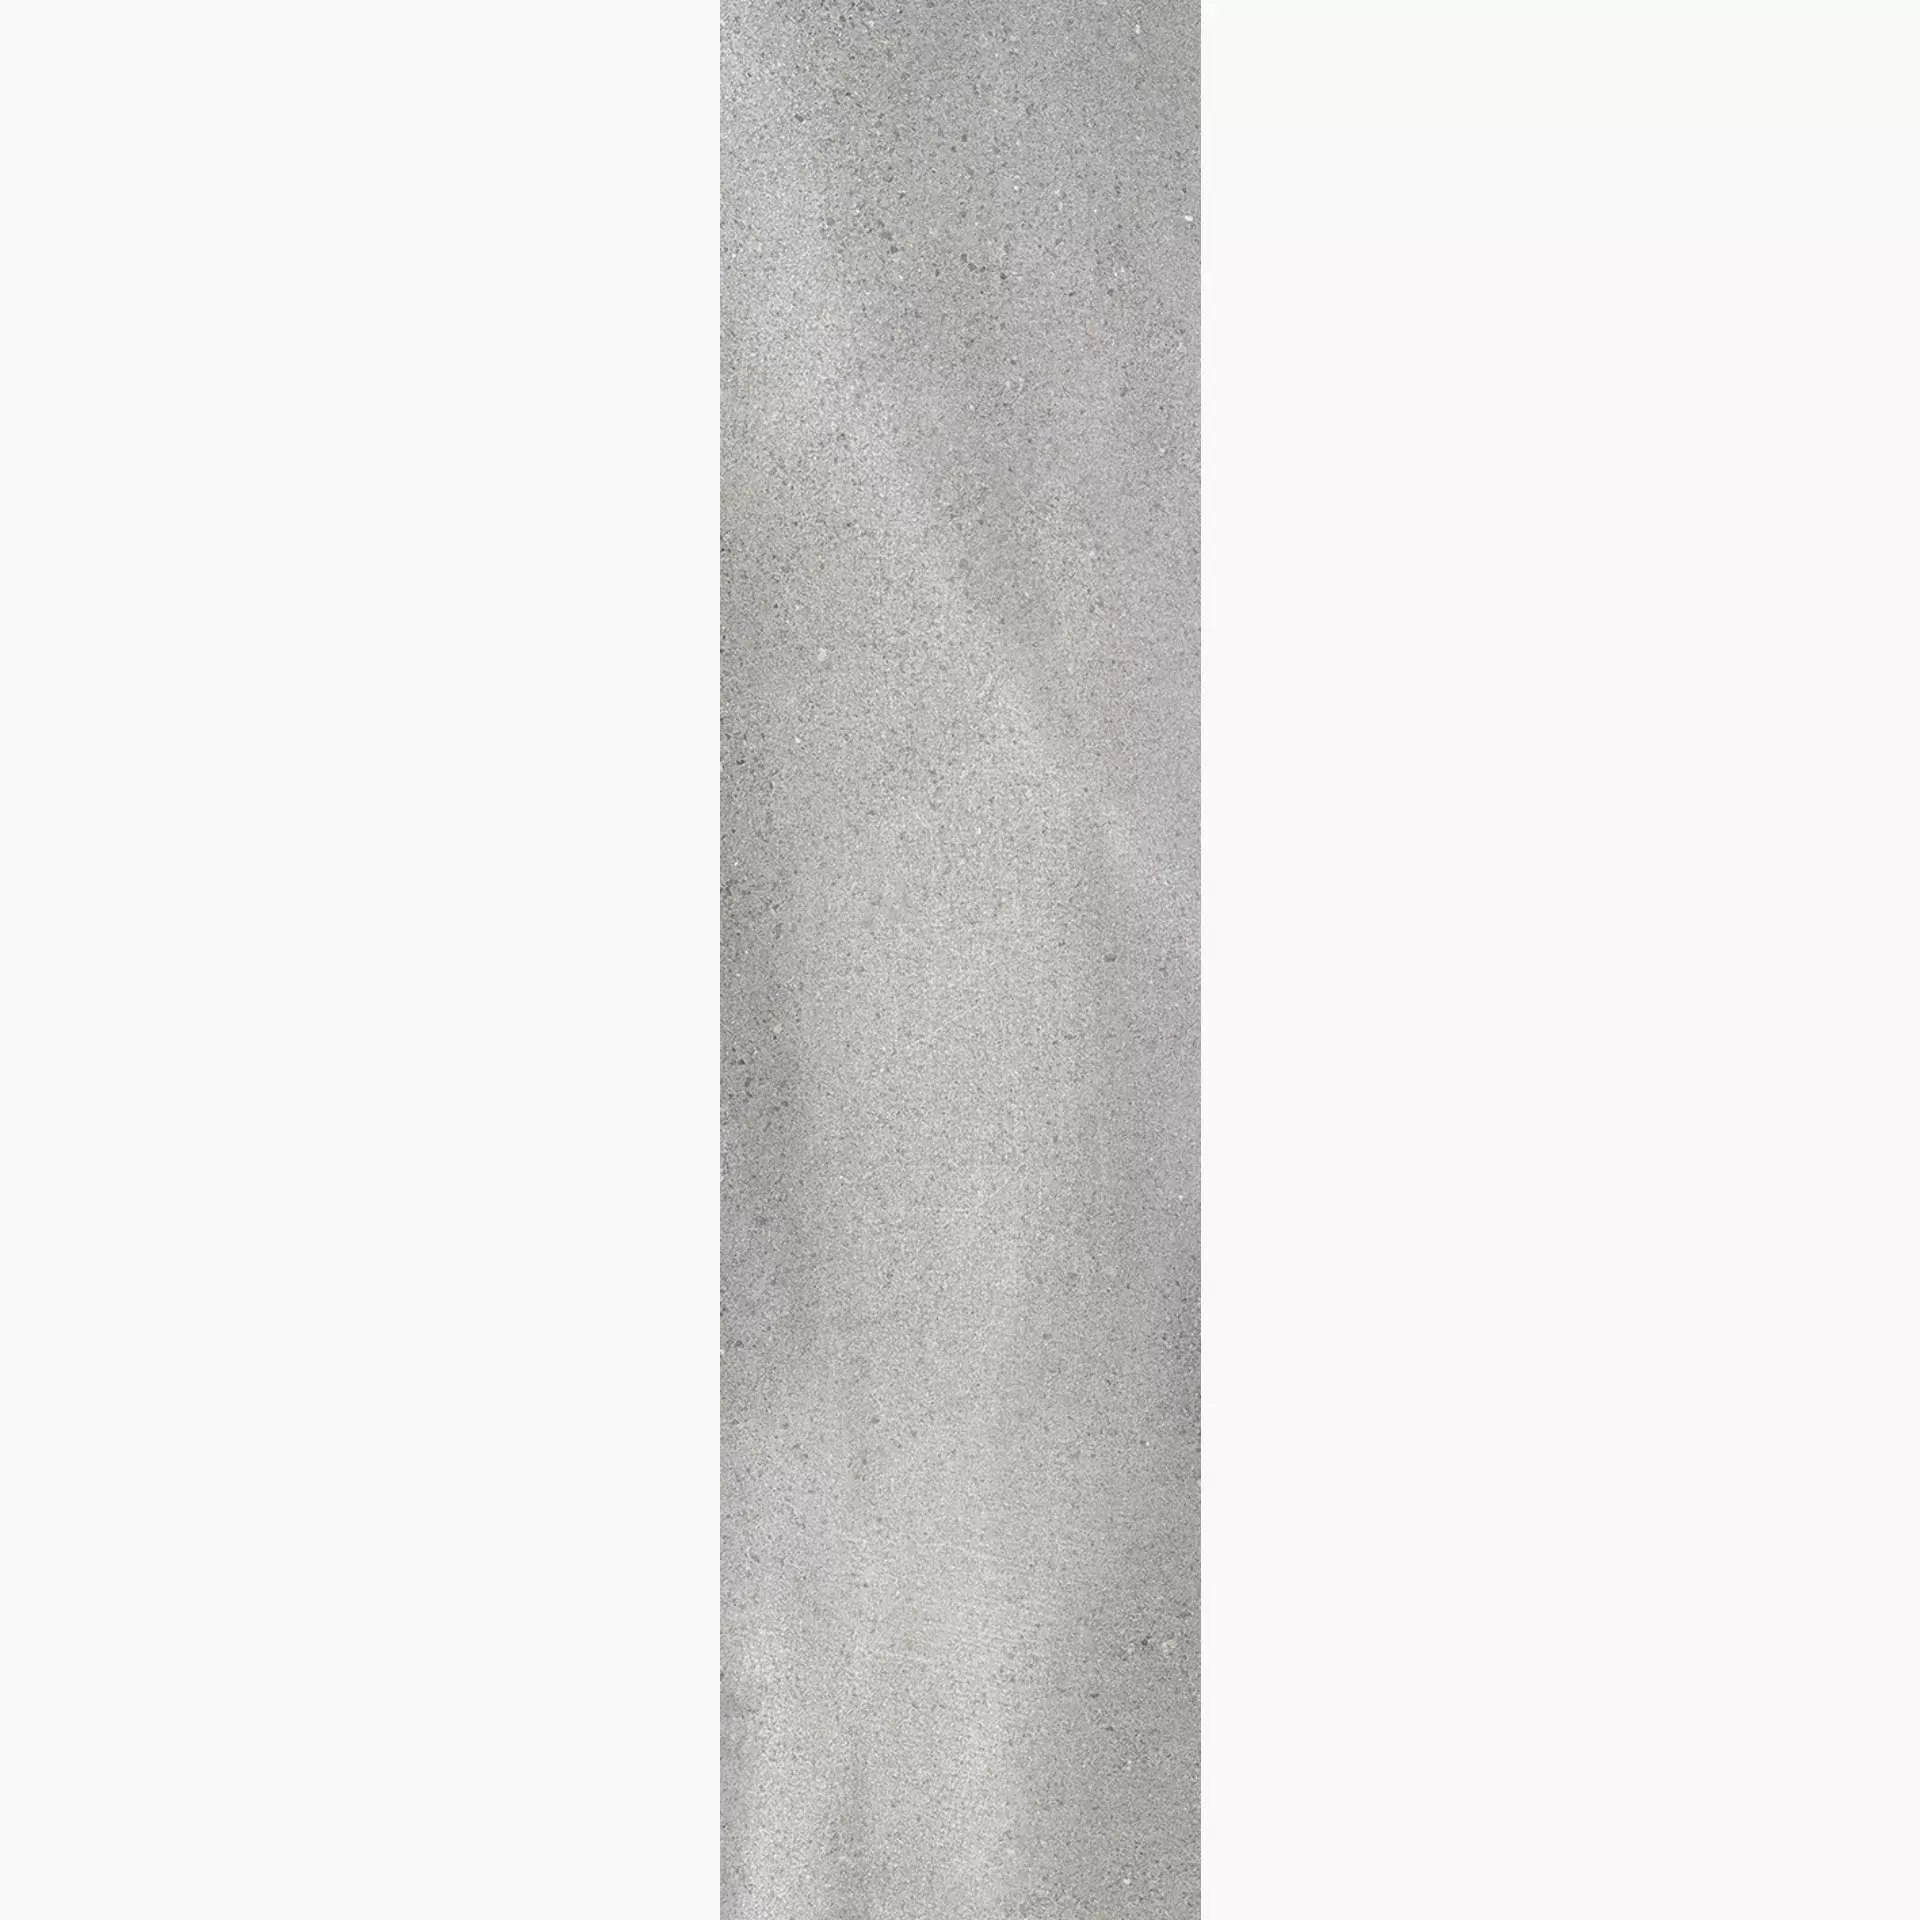 Wandfliese,Bodenfliese Villeroy & Boch Natural Blend Stone Grey Matt Stone Grey 2356-LY60 matt 30x120cm rektifiziert 10mm